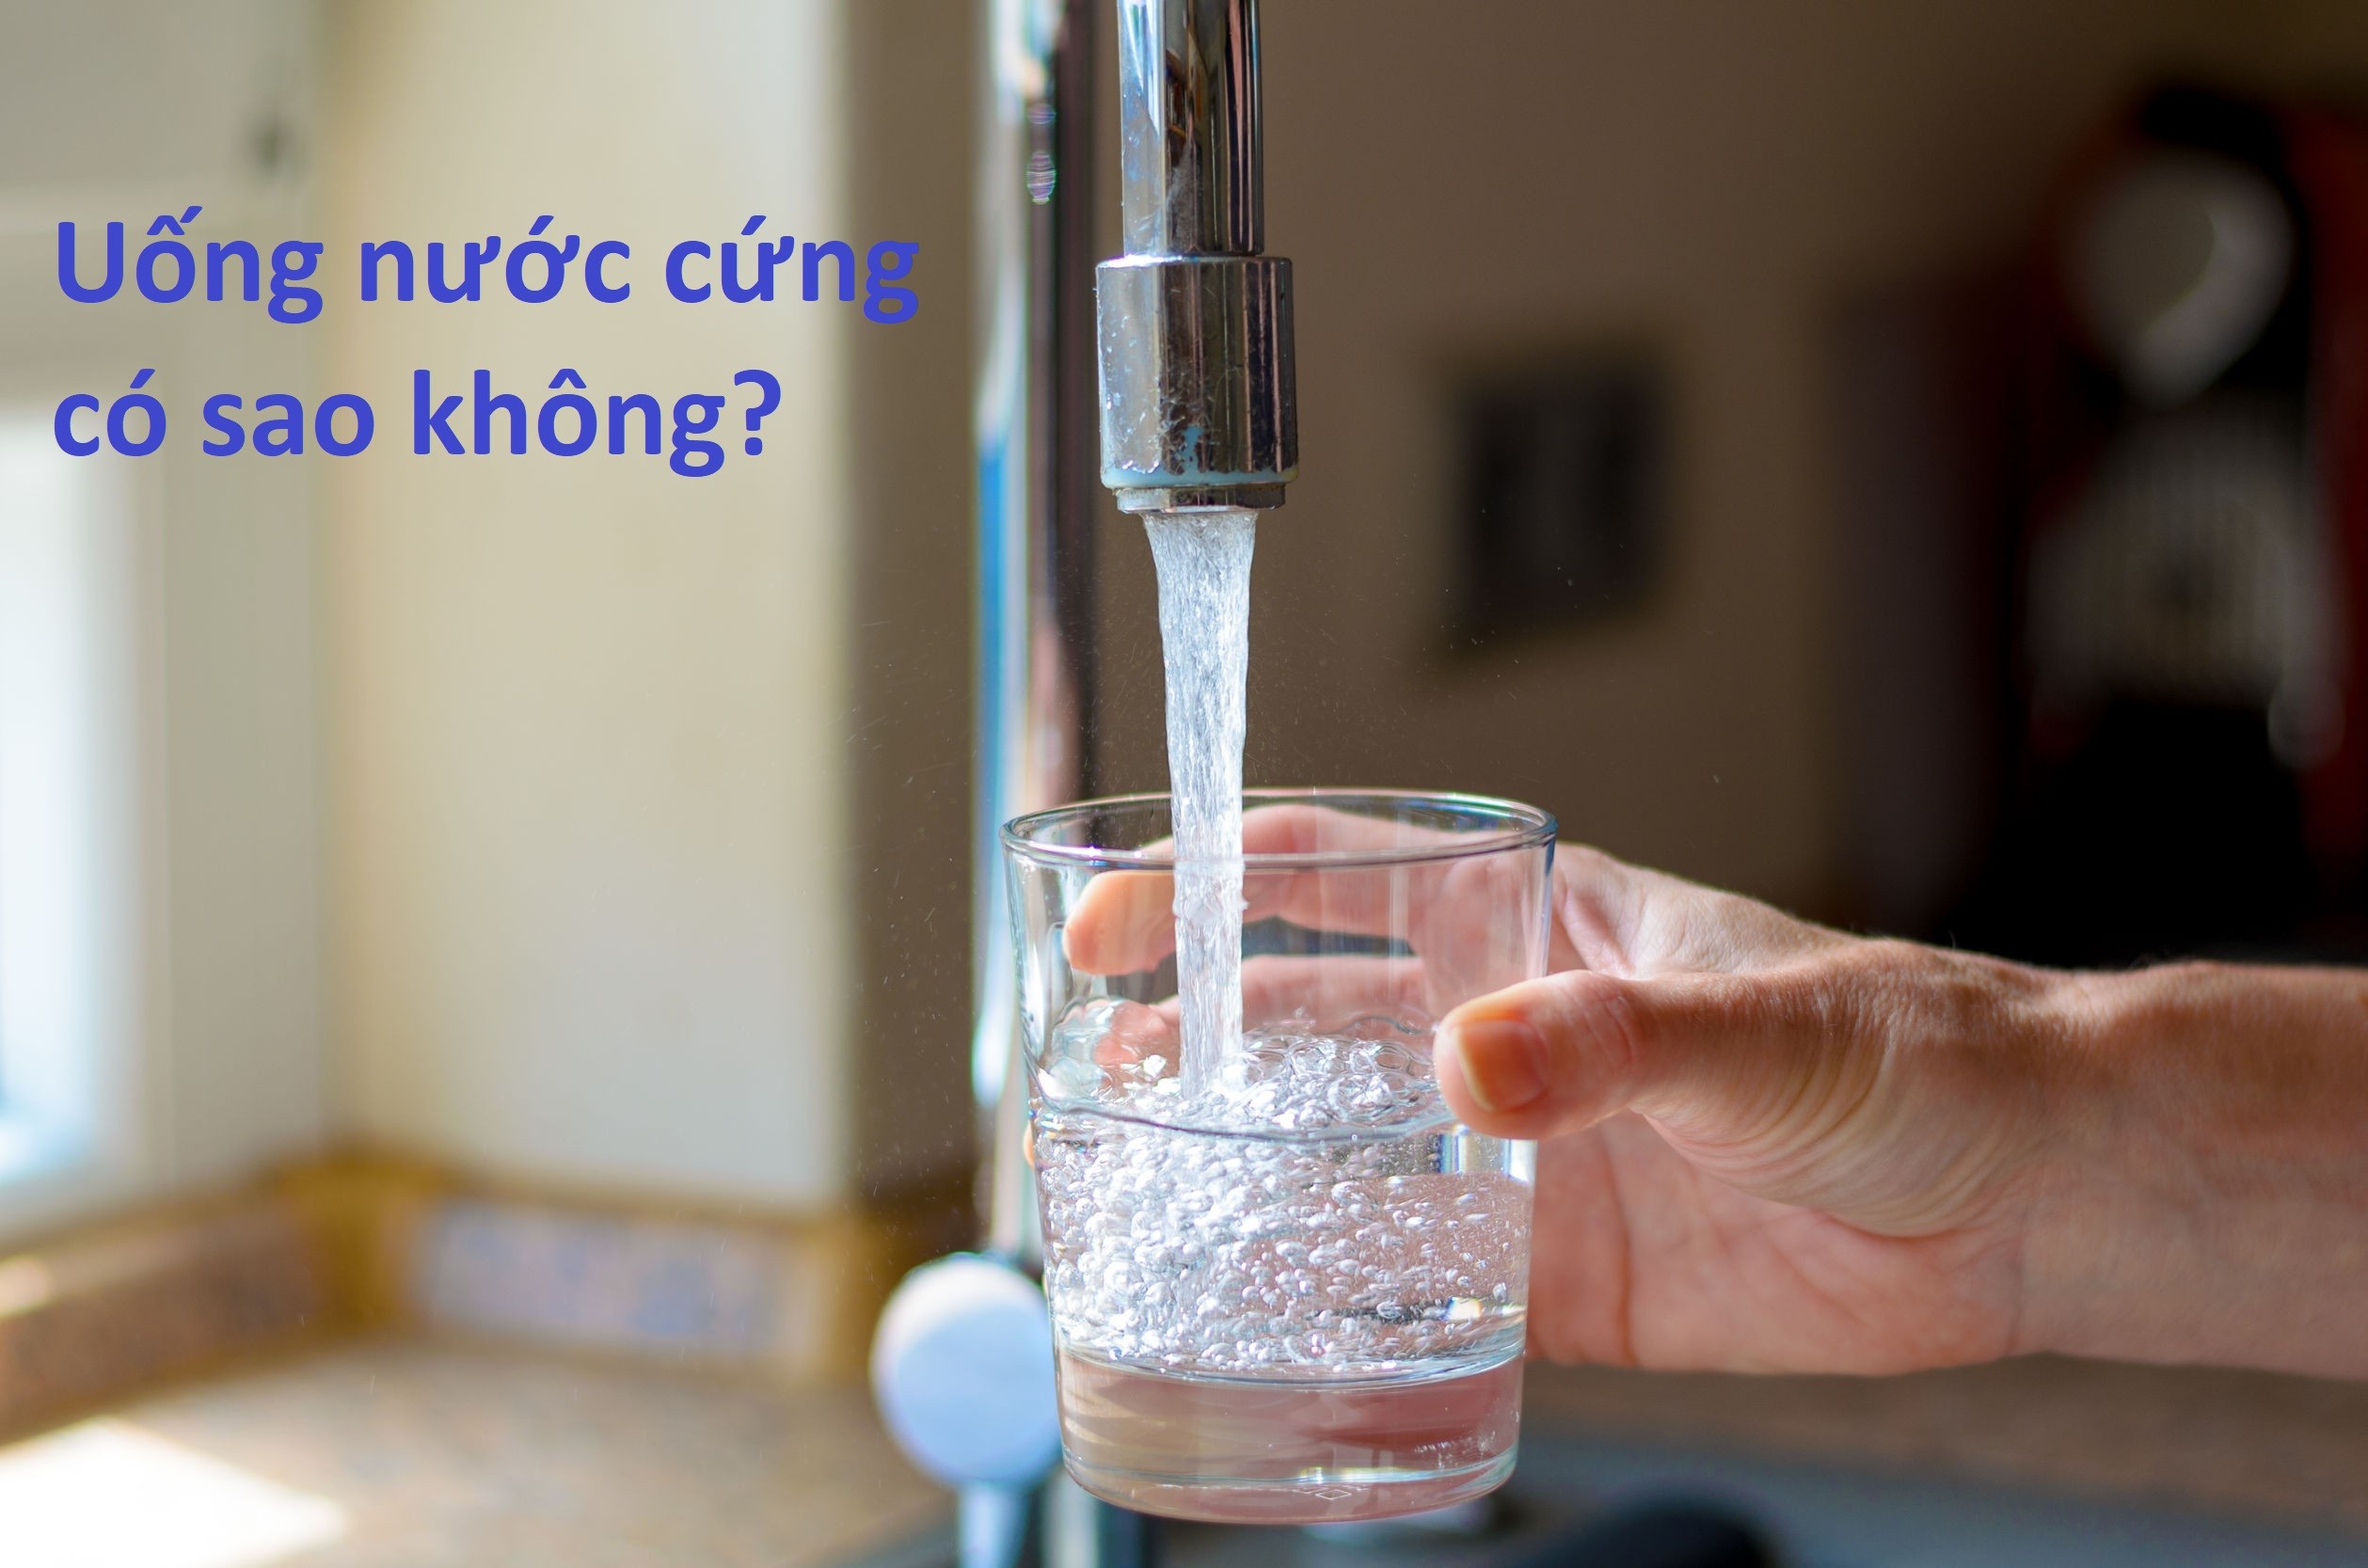 Nước cứng là gì? Uống nước cứng có ảnh hưởng gì không?